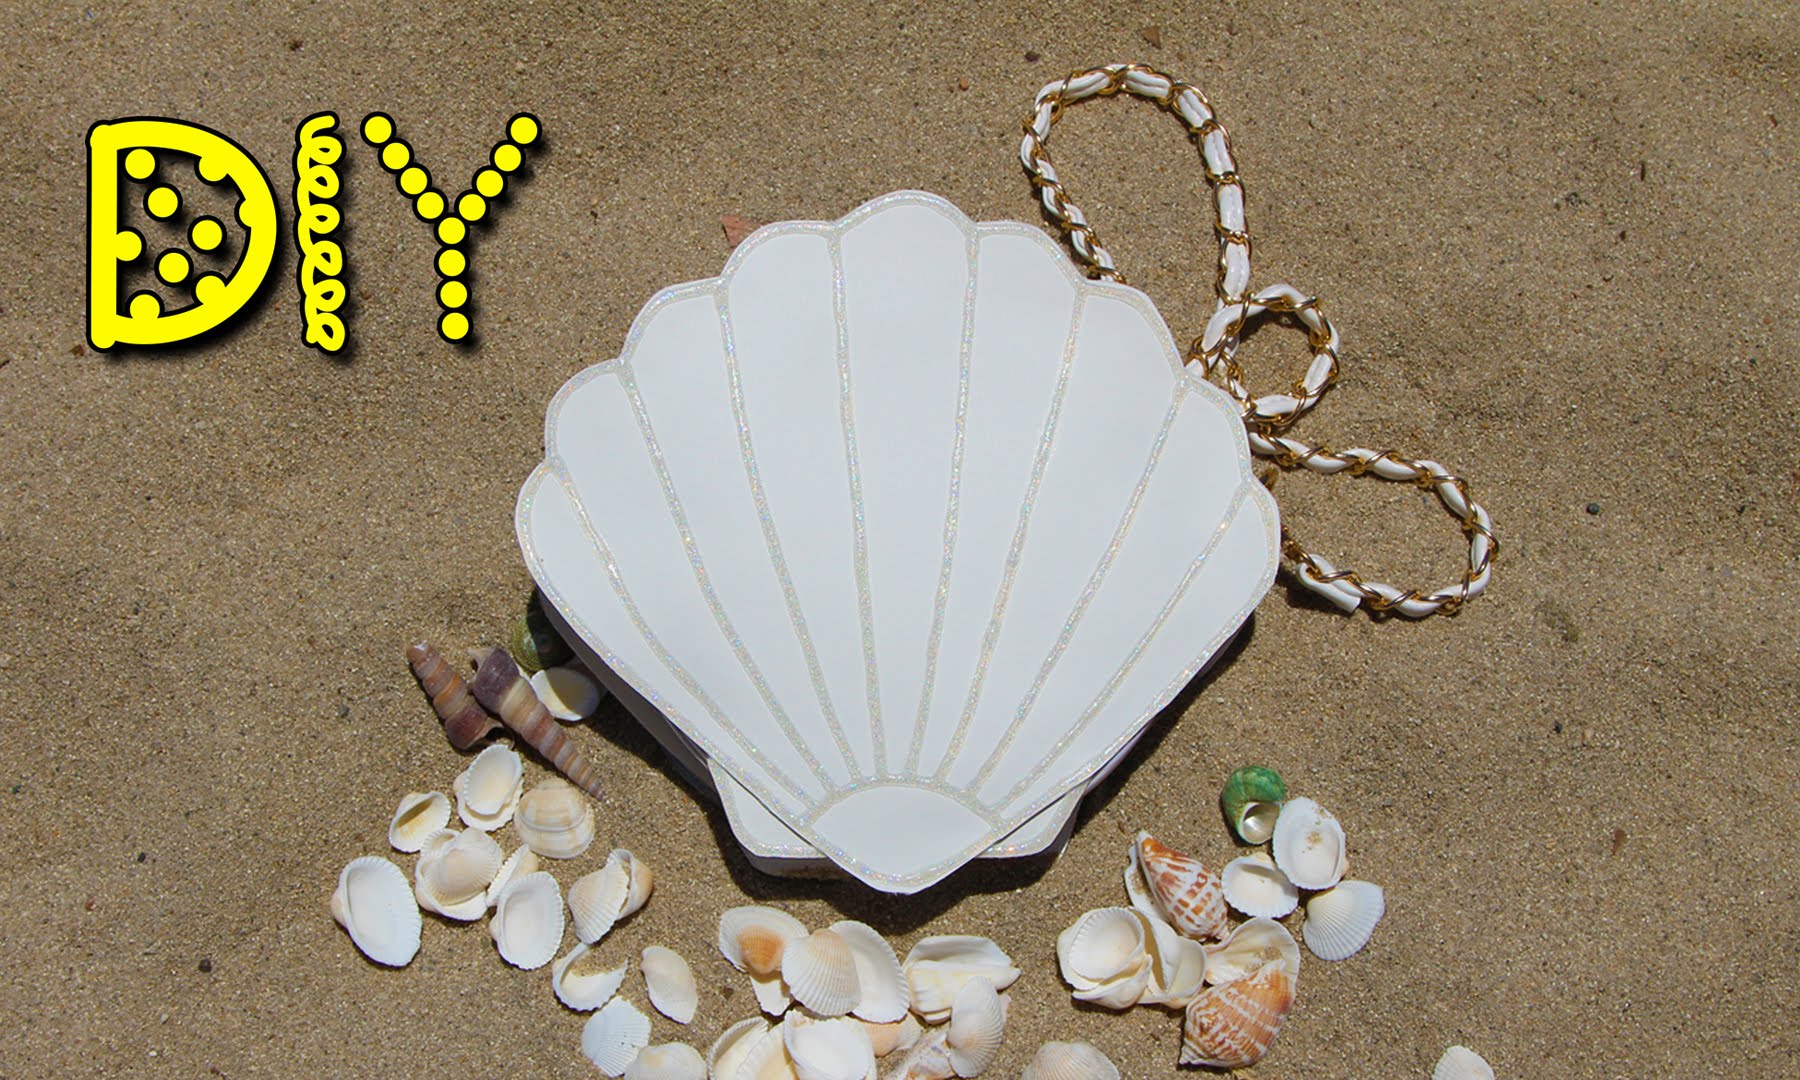 DIY Seashell Bag - NO SEW! || Lucykiins - YouTube